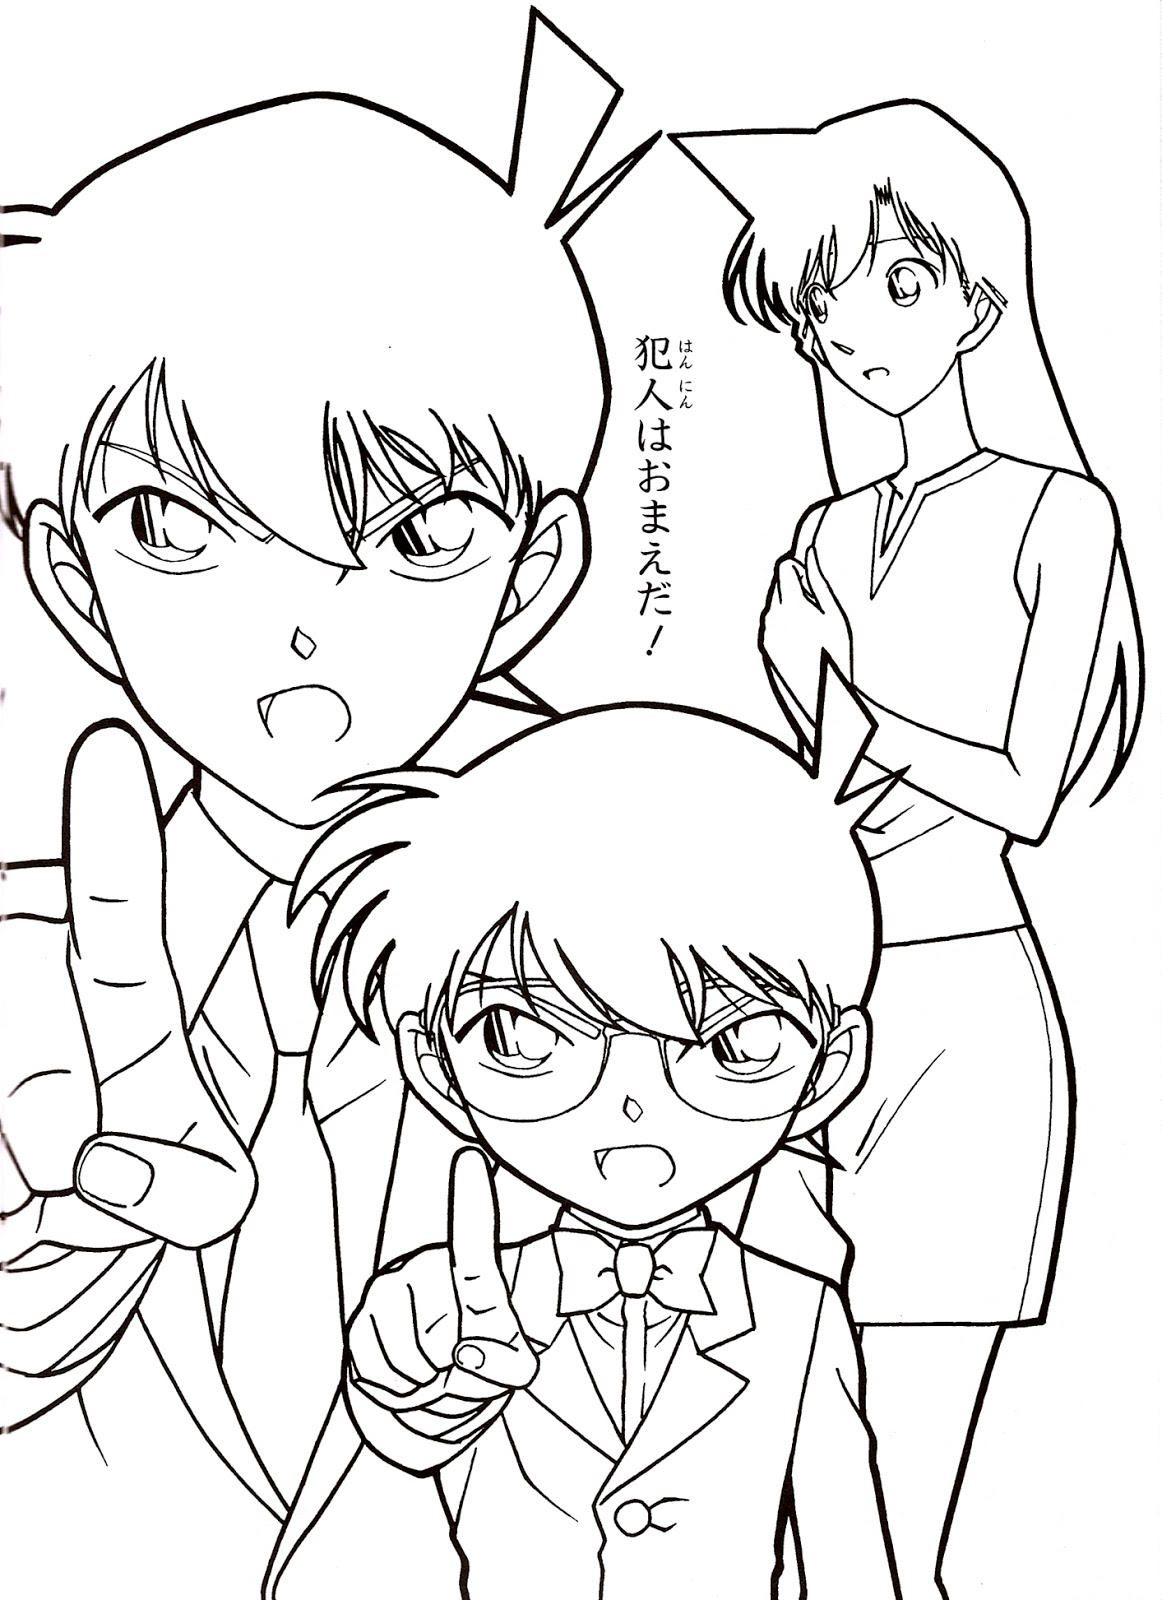 10 Mewarnai Gambar Detective Conan